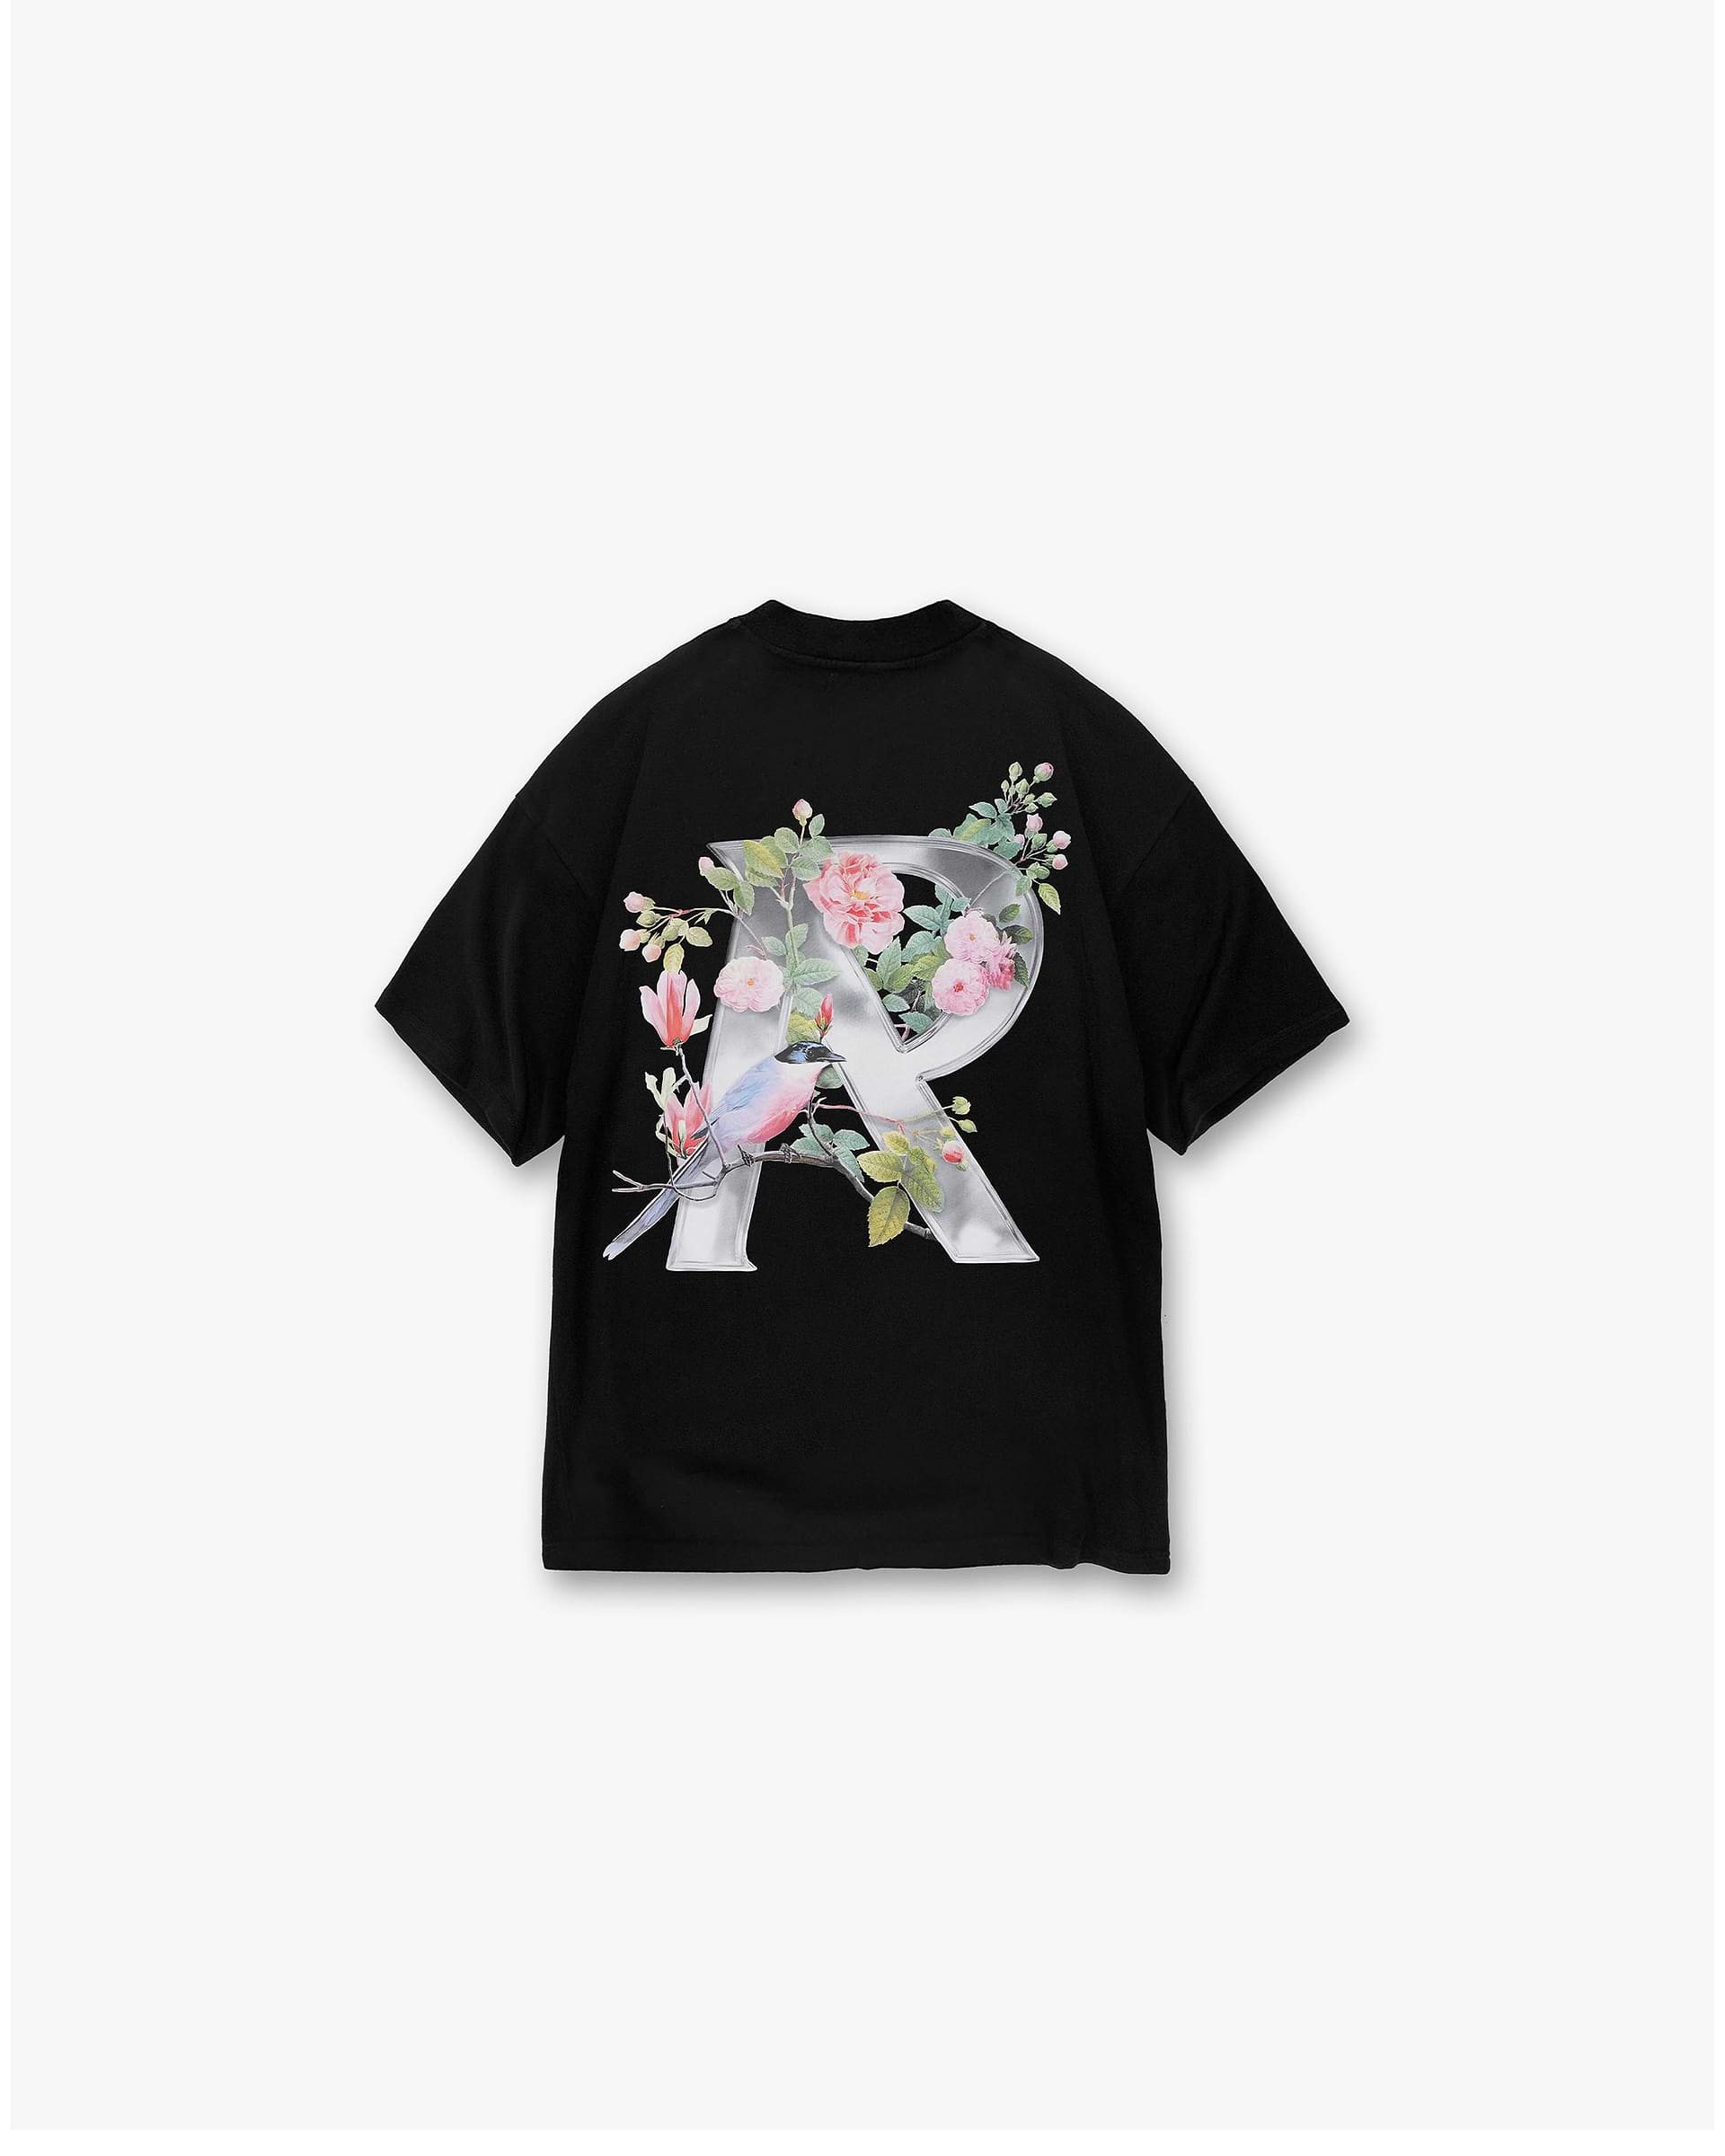 Floral Initial T-Shirt | Black T-Shirts SC23 | Represent Clo